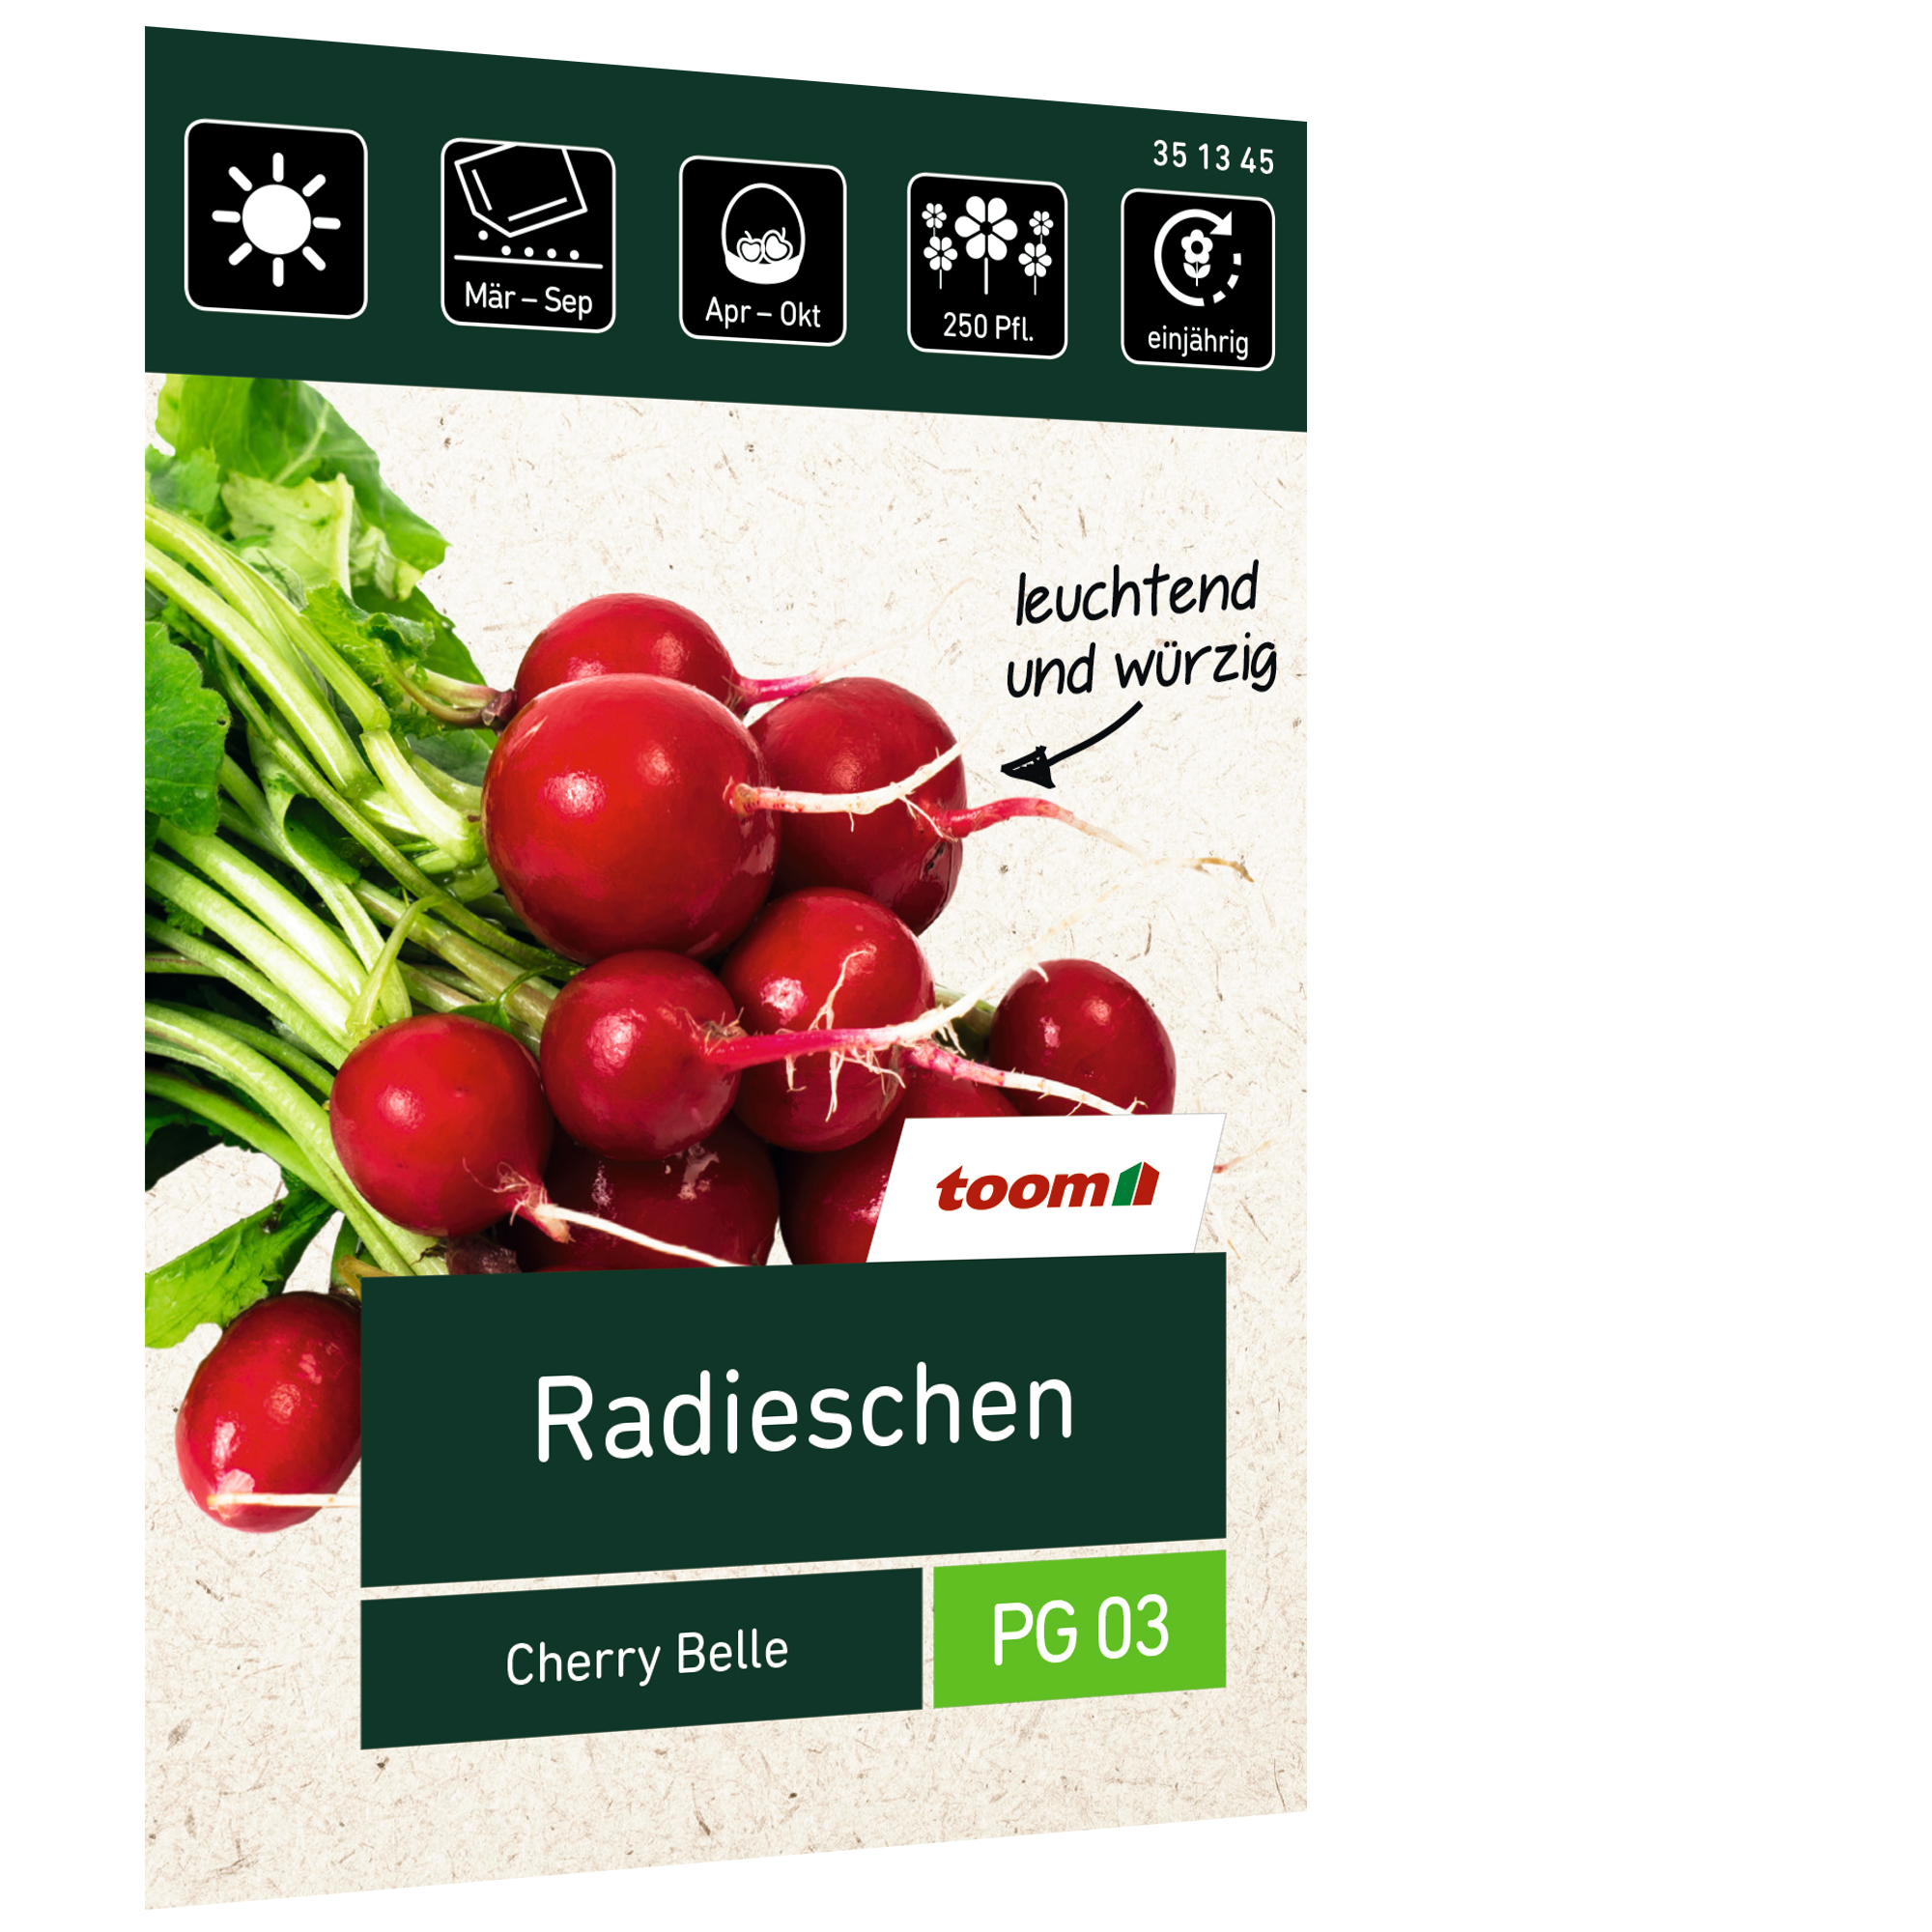 Radieschen 'Cherry Belle' + product picture